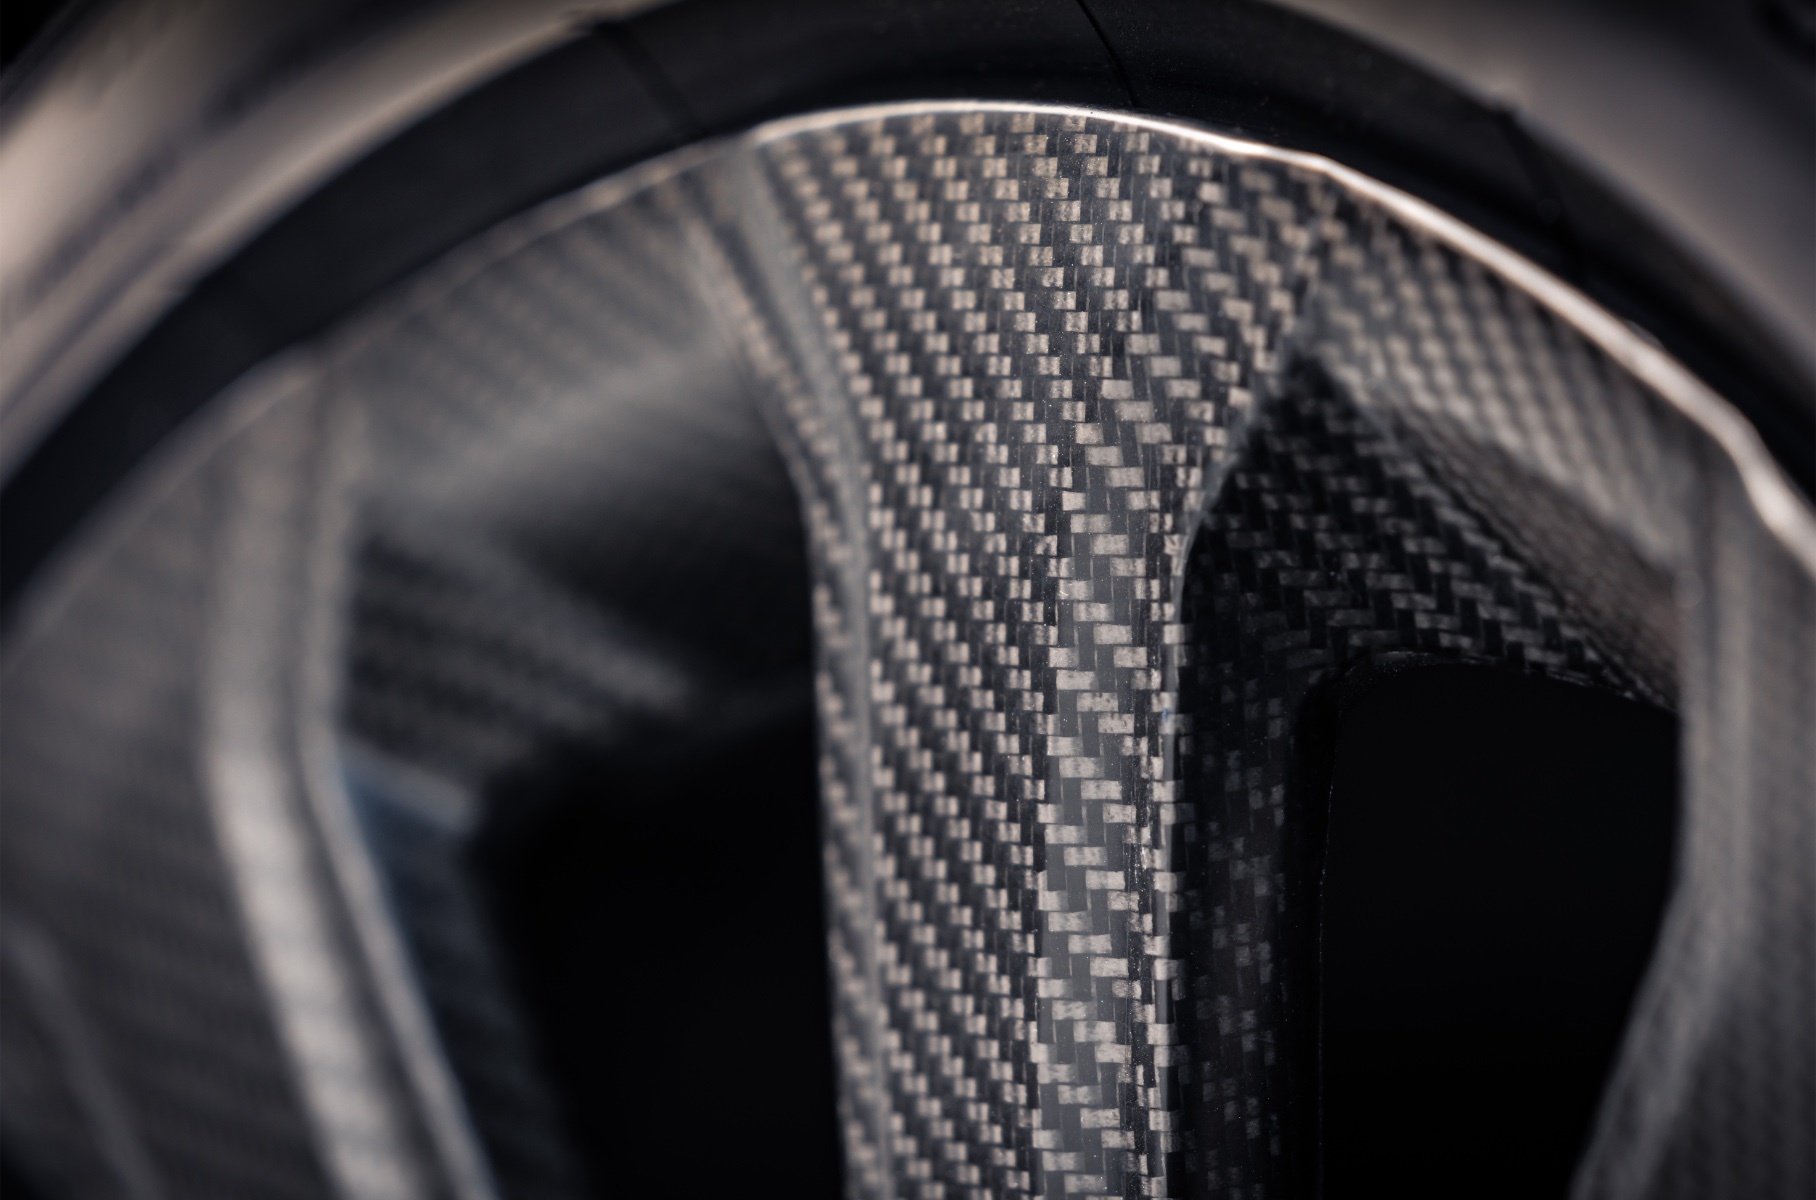 Кроссоверу Bentley Bentayga добавили карбоновые колеса